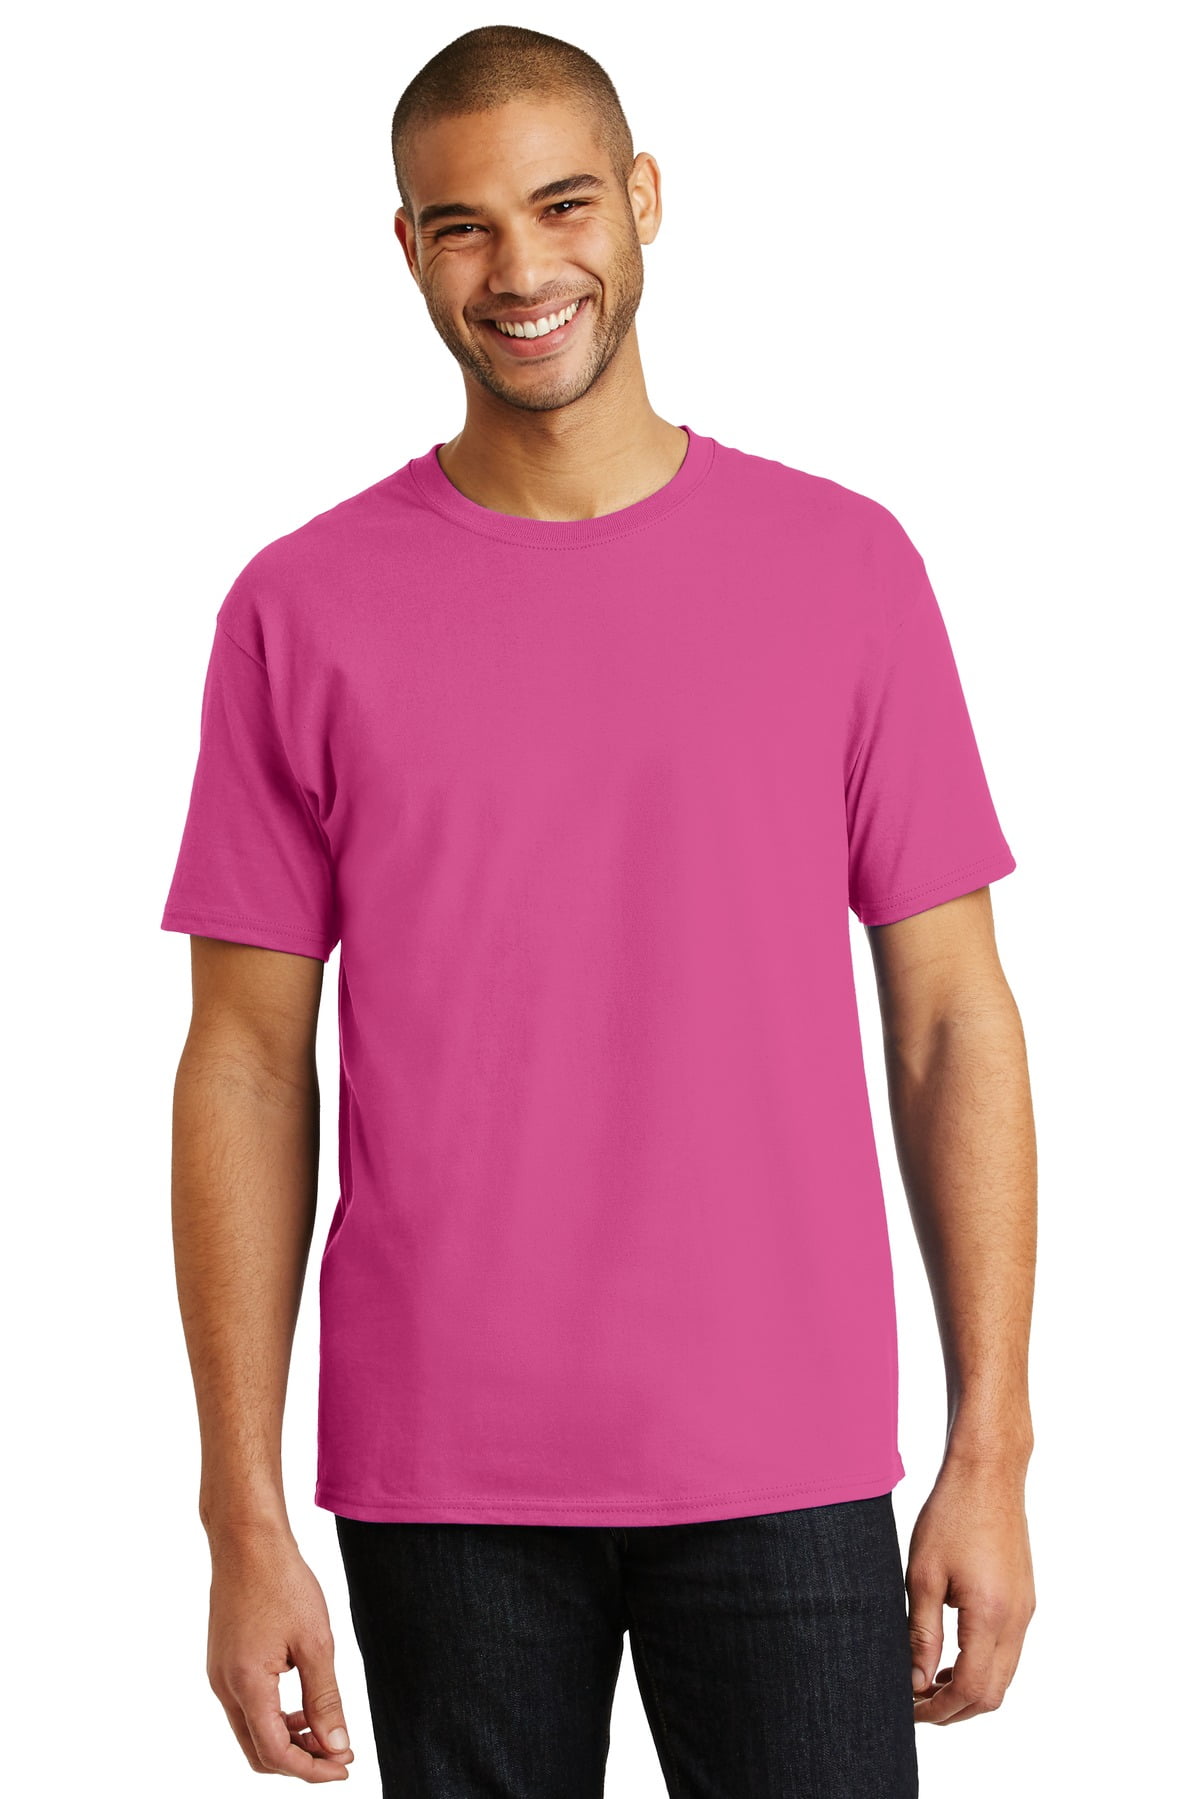 Hanes Men's 100 Percent Cotton Tagless T-Shirt. 5250 - Walmart.com